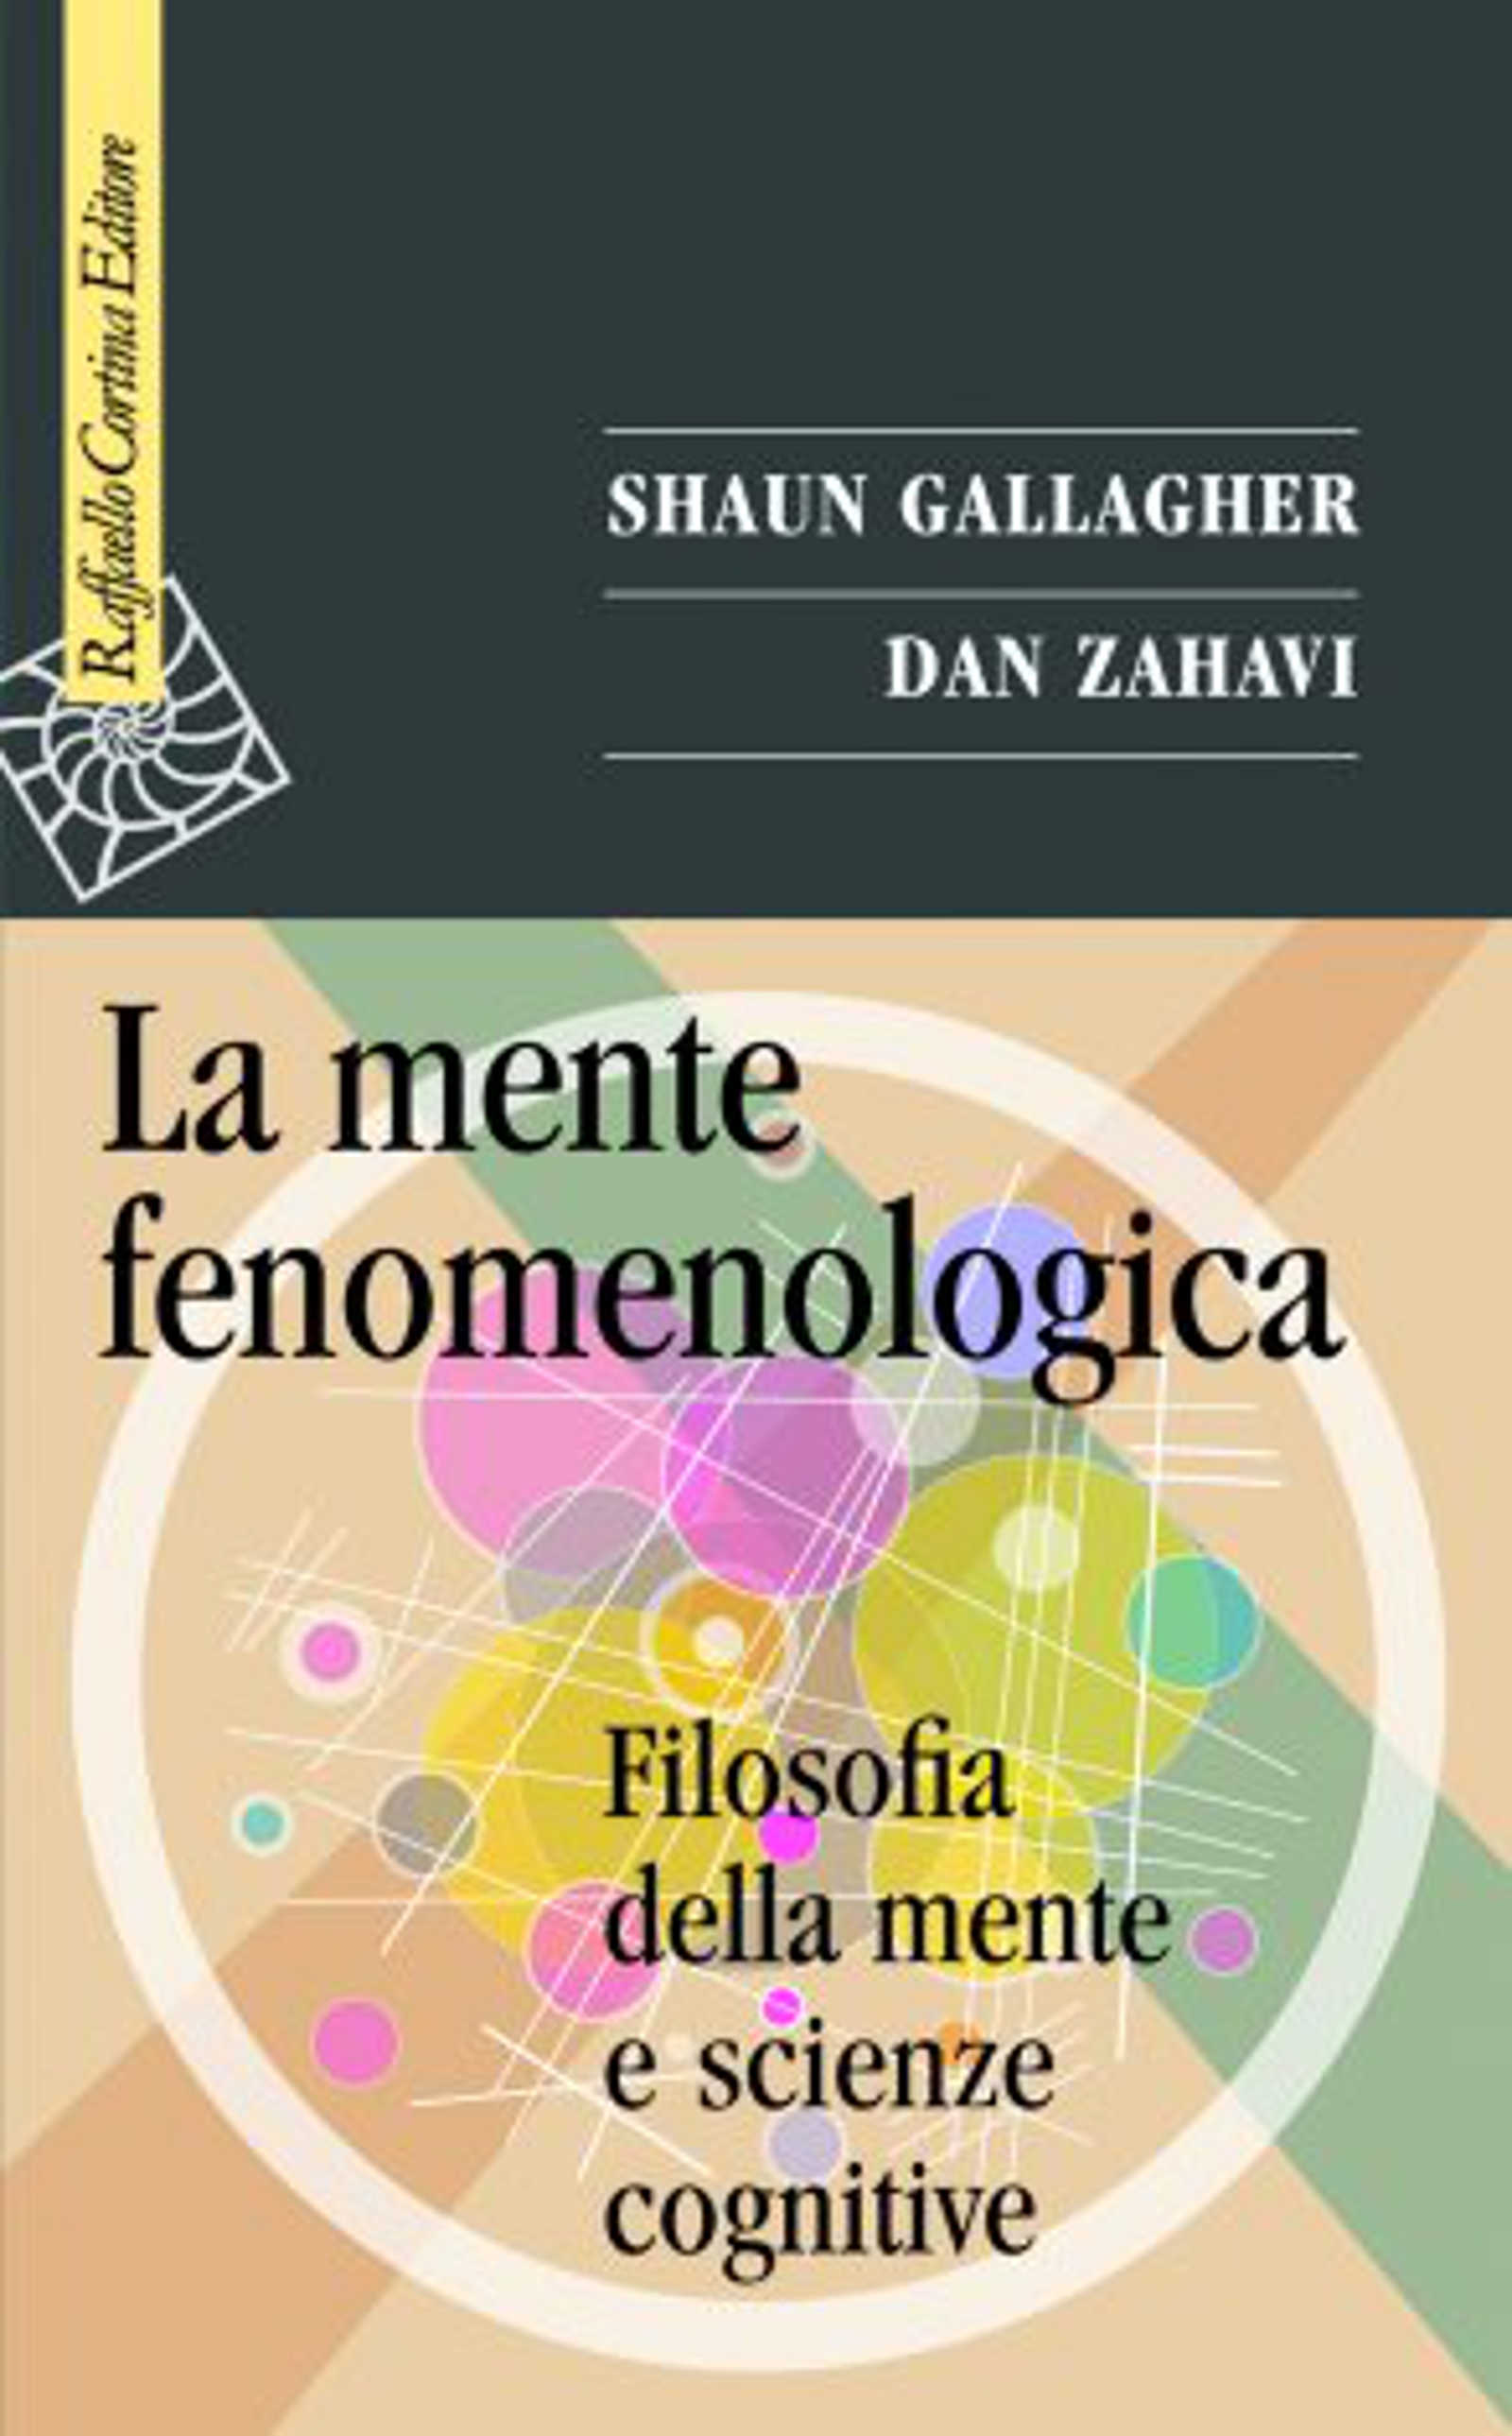 La mente fenomenologica (2022) di Gallagher e Zahavi – Recensione